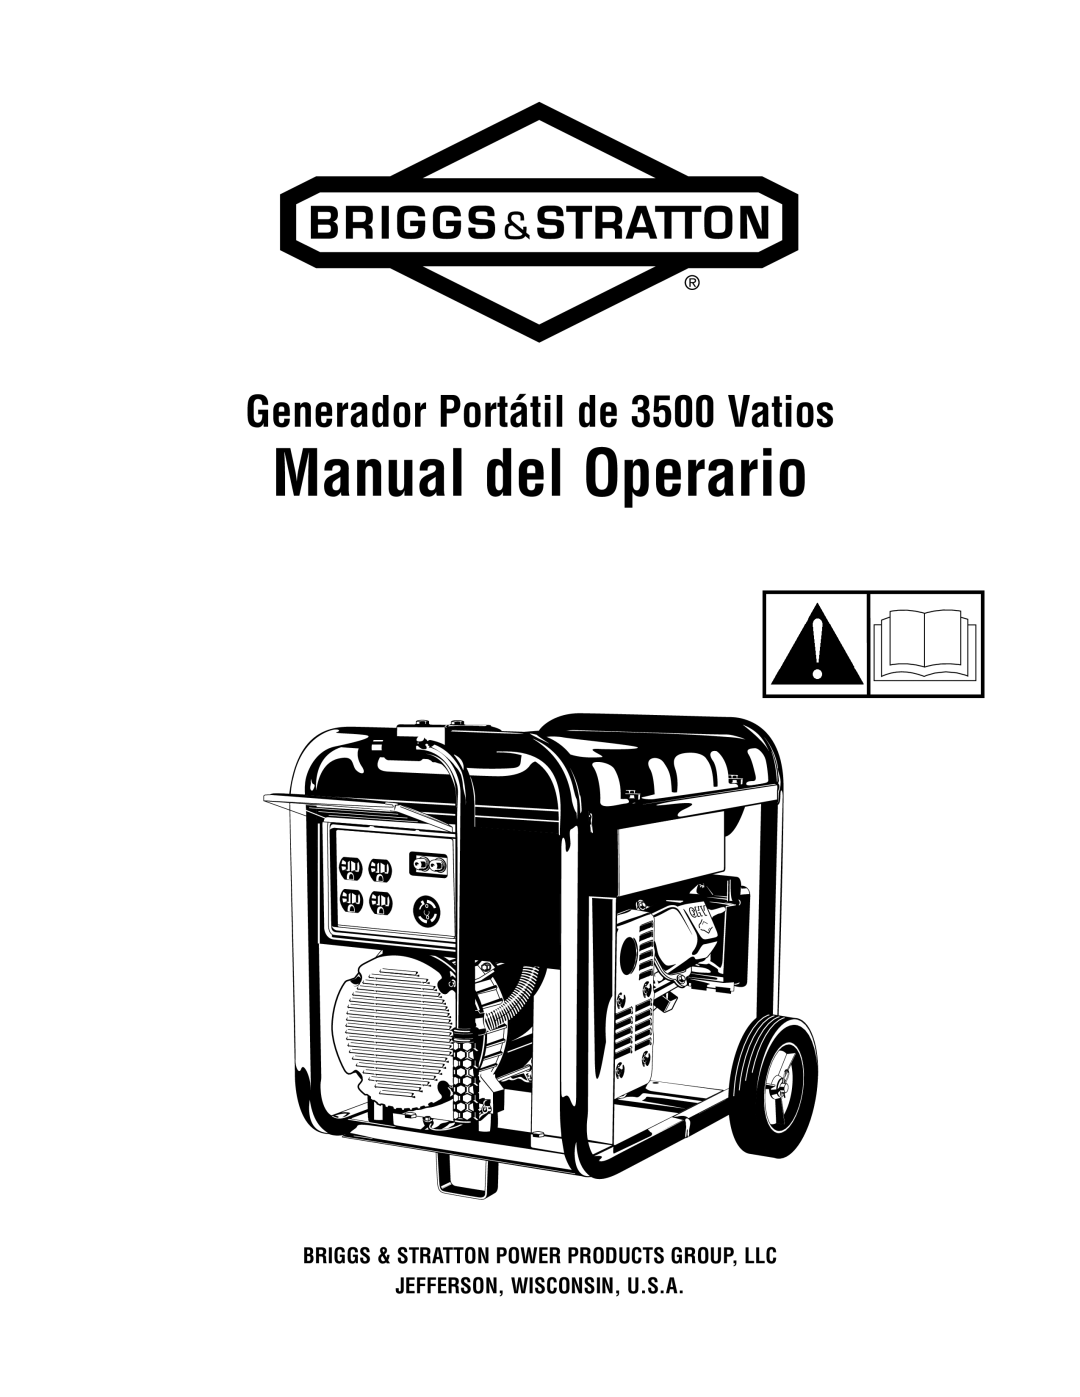 Briggs & Stratton 30348 manual Manual del Operario, Generador Portátil de 3500 Vatios, Jefferson, Wisconsin, U.S.A 